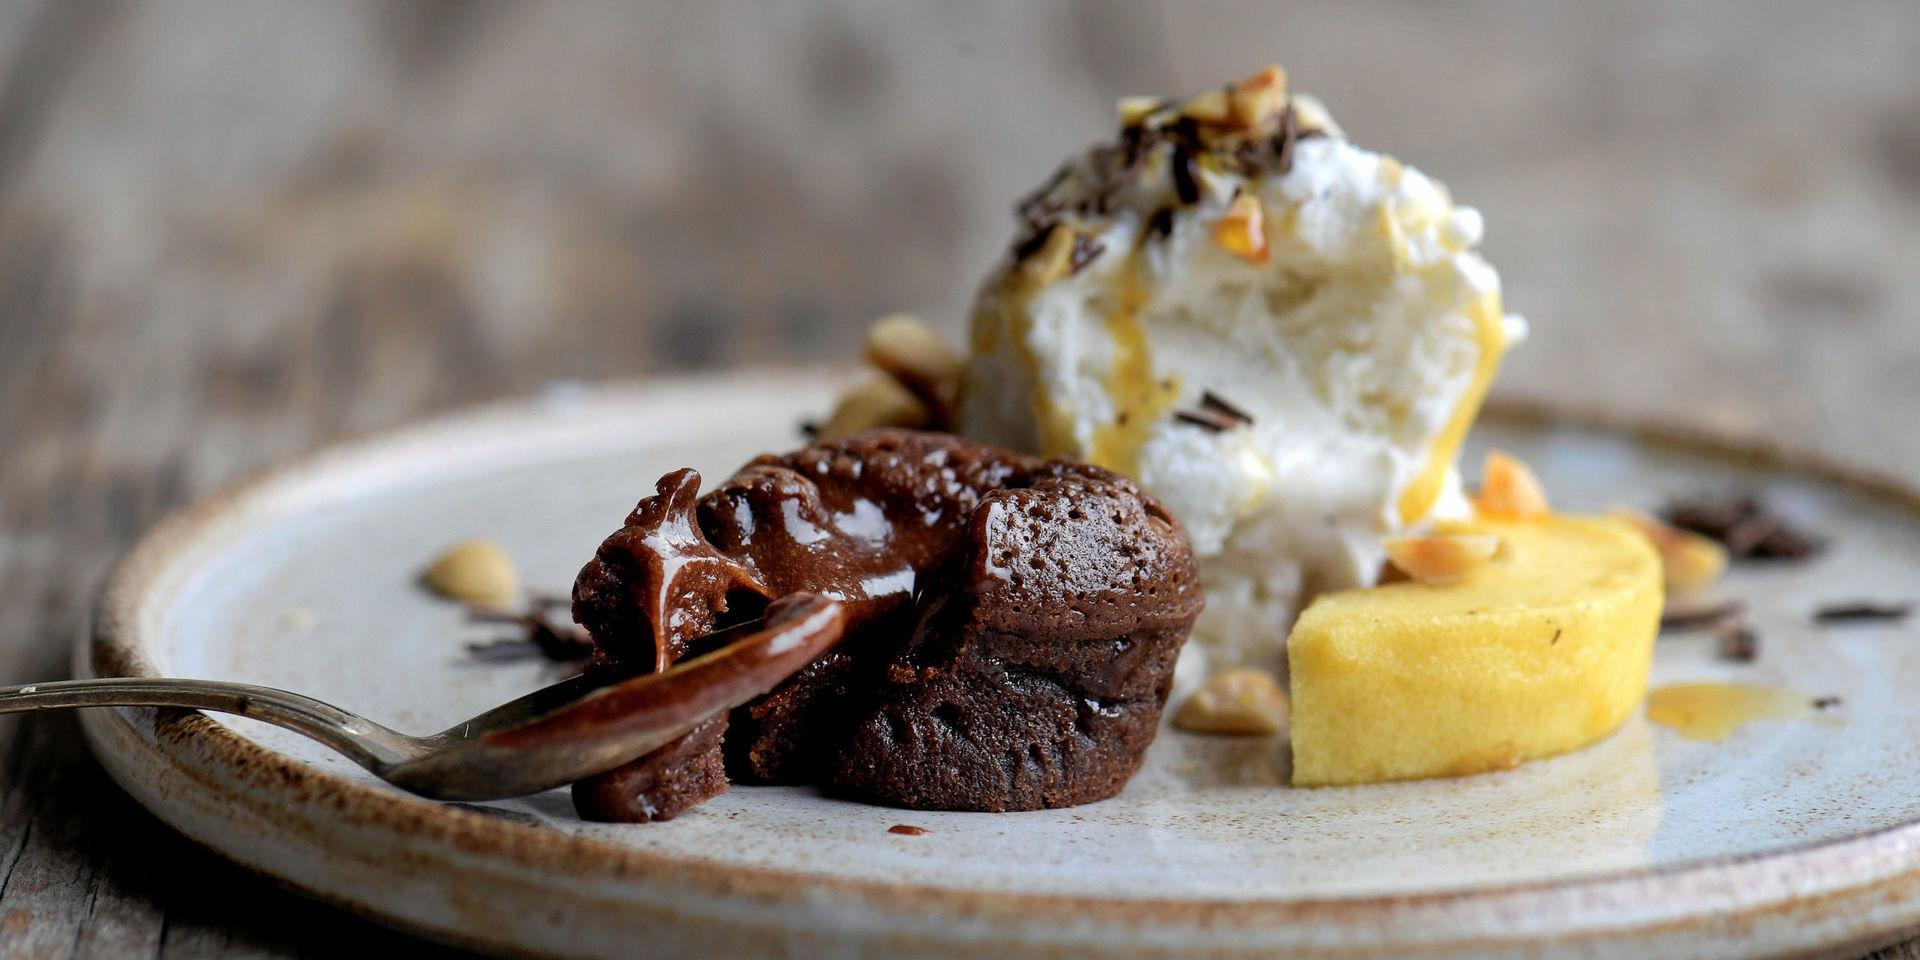 Varm chokladbakelse får sällskap av karamellbakade höstäpplen, rostade nötter och krämig vaniljglass.